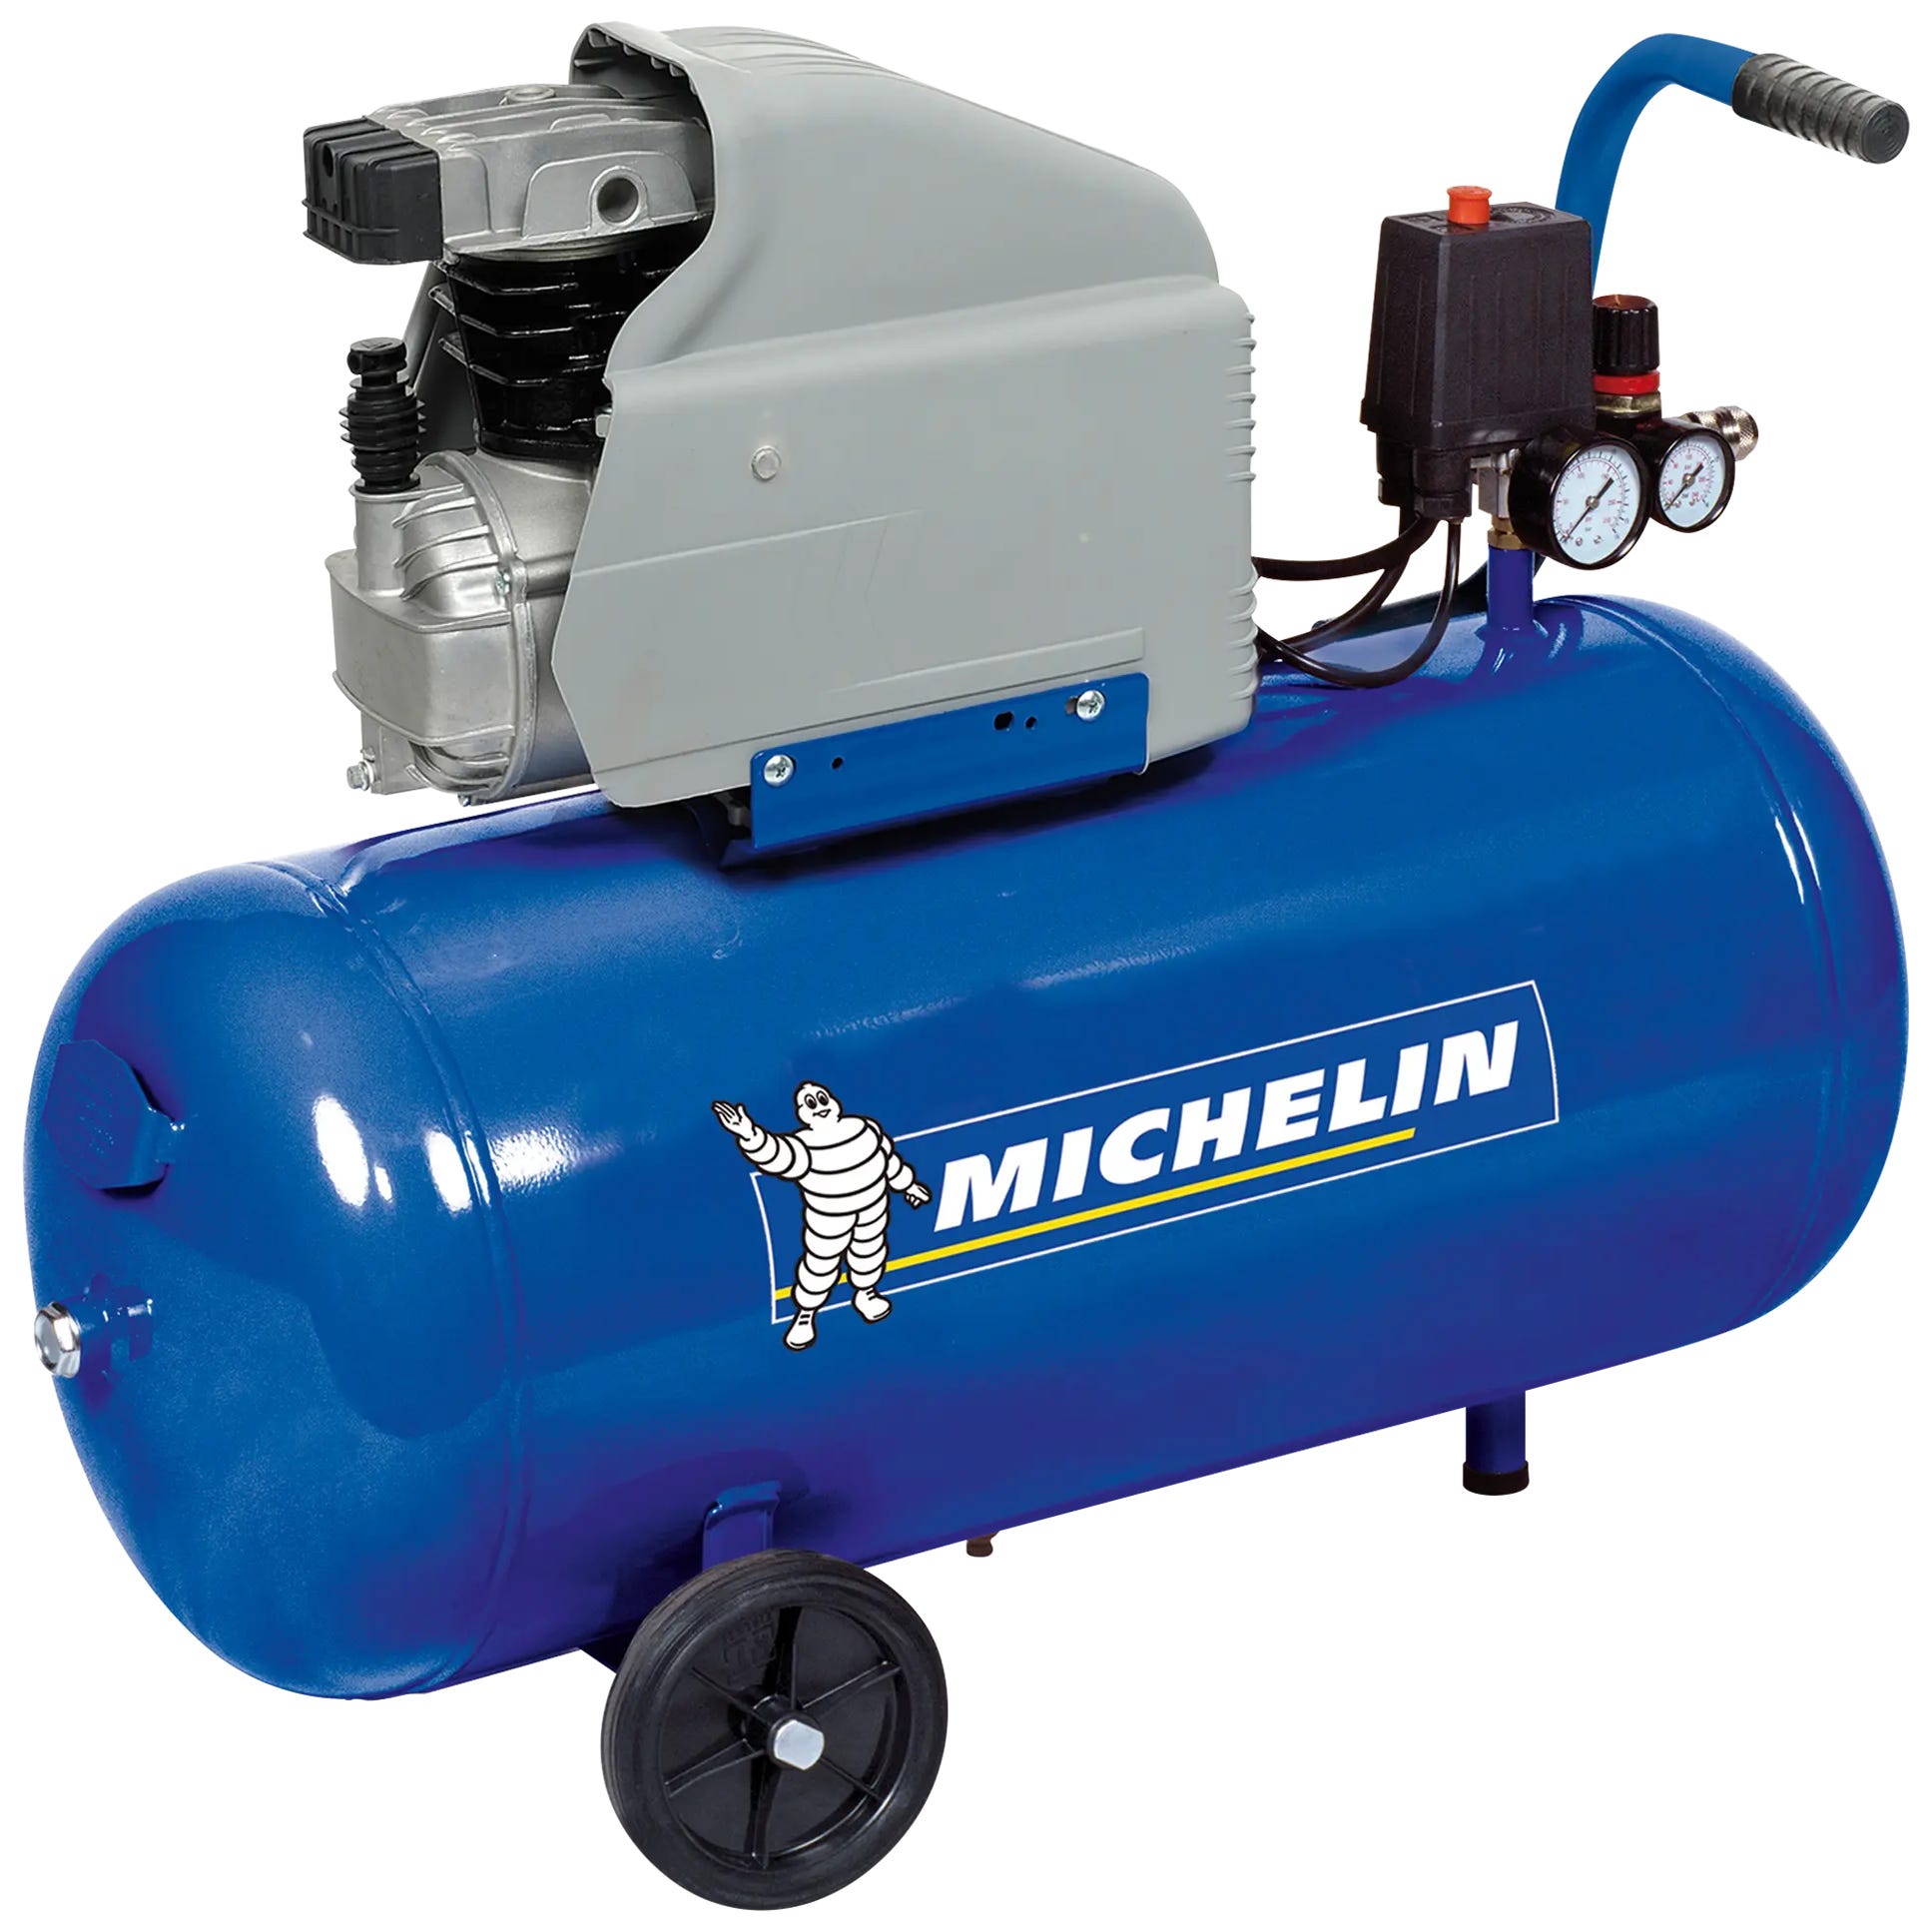 Compresor aceite MICHELIN Mb50 de 2 cv y 50l de depósito